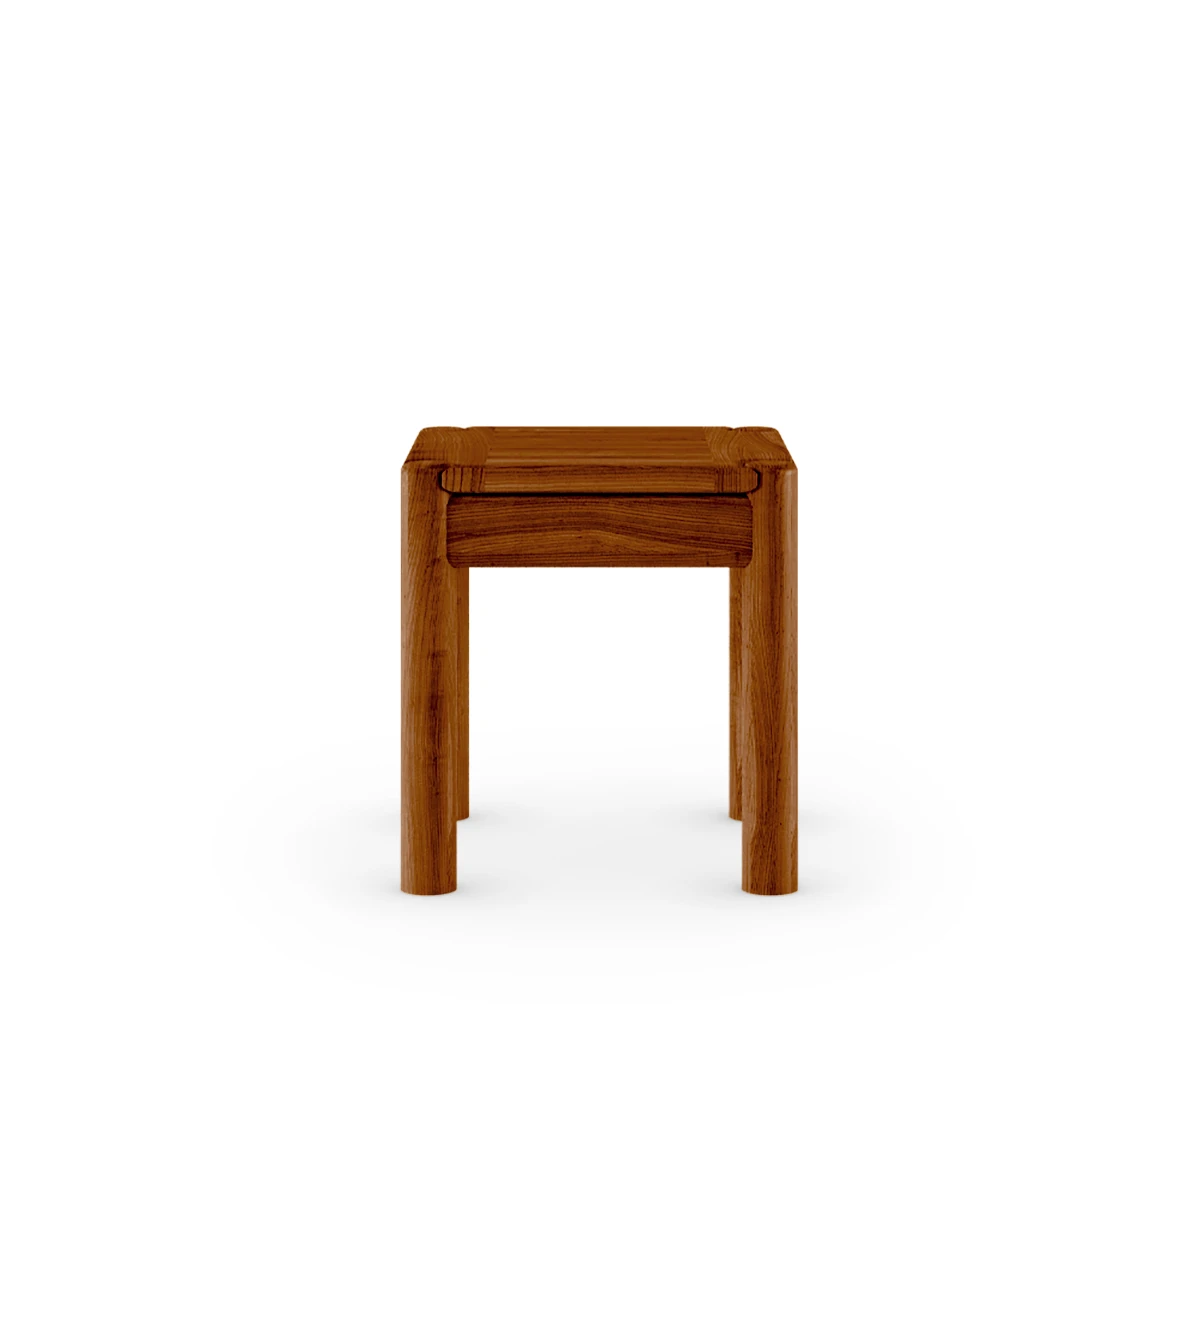 Table d'appoint carrée en bois naturel couleur miel.